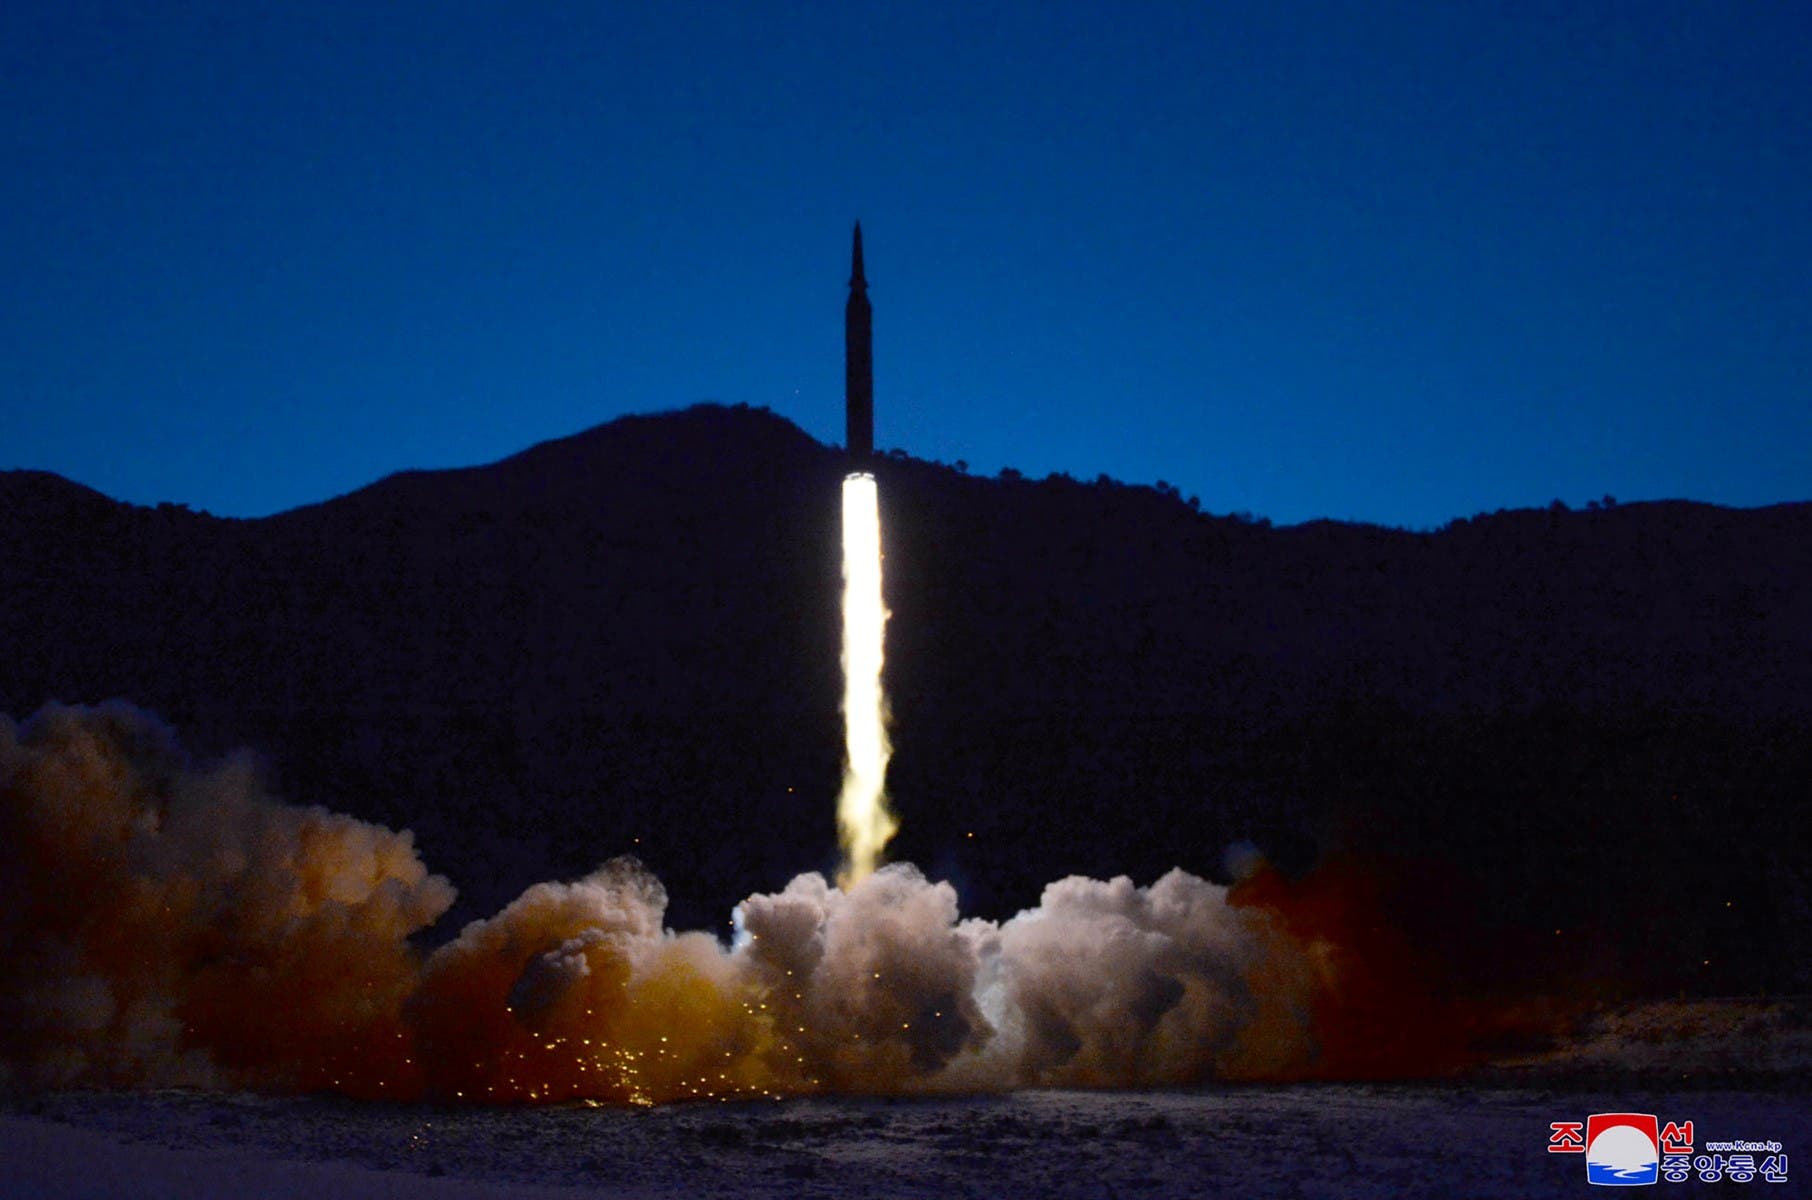 تجربة صاروخية أجرتها كوريا الشمالية في يناير الحالي